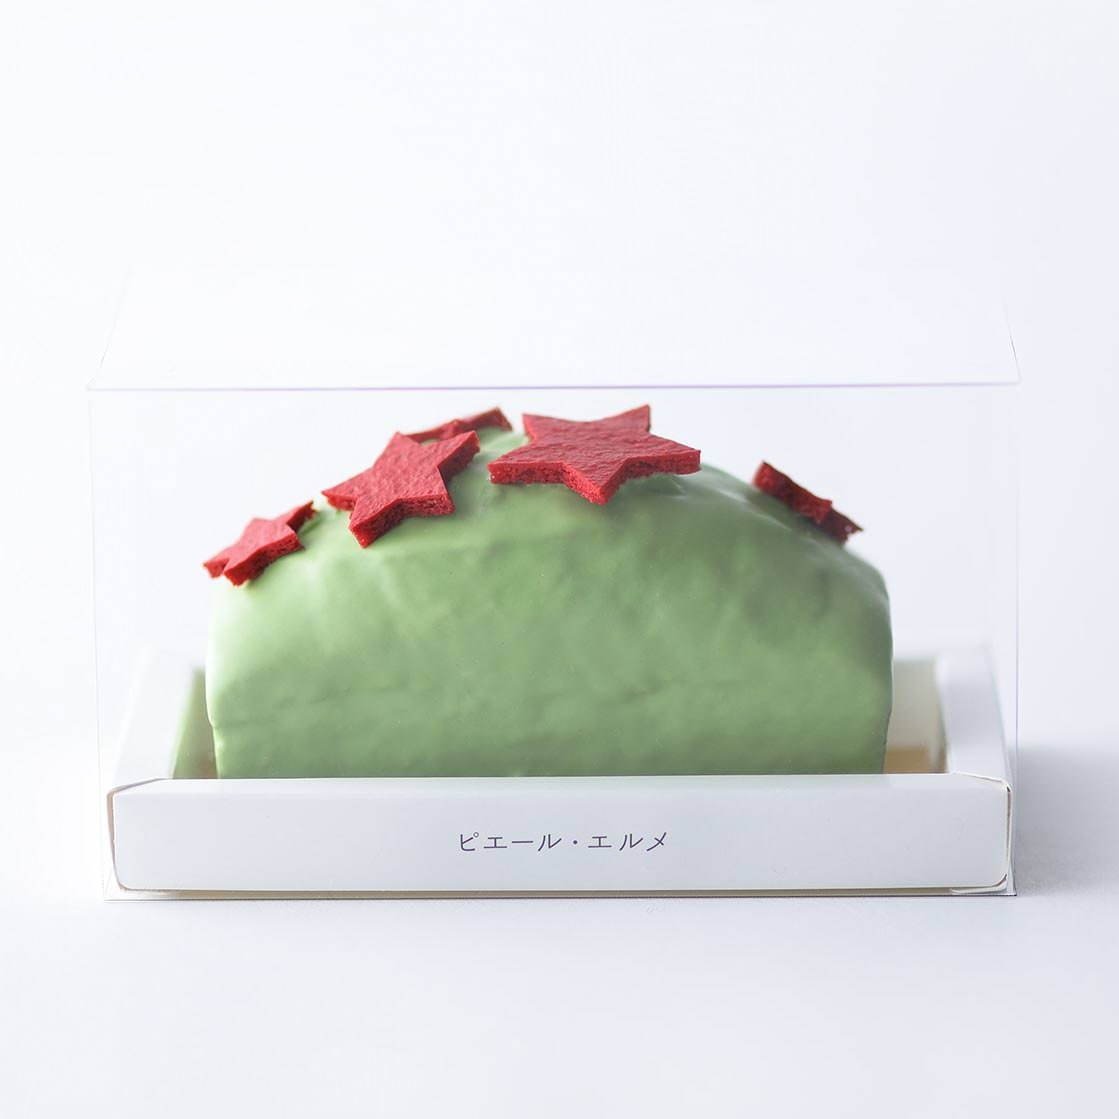 Made in ピエール・エルメ“星形マカロン”のクリスマスパウンドケーキ、ピスタチオ×ラズベリー | 写真